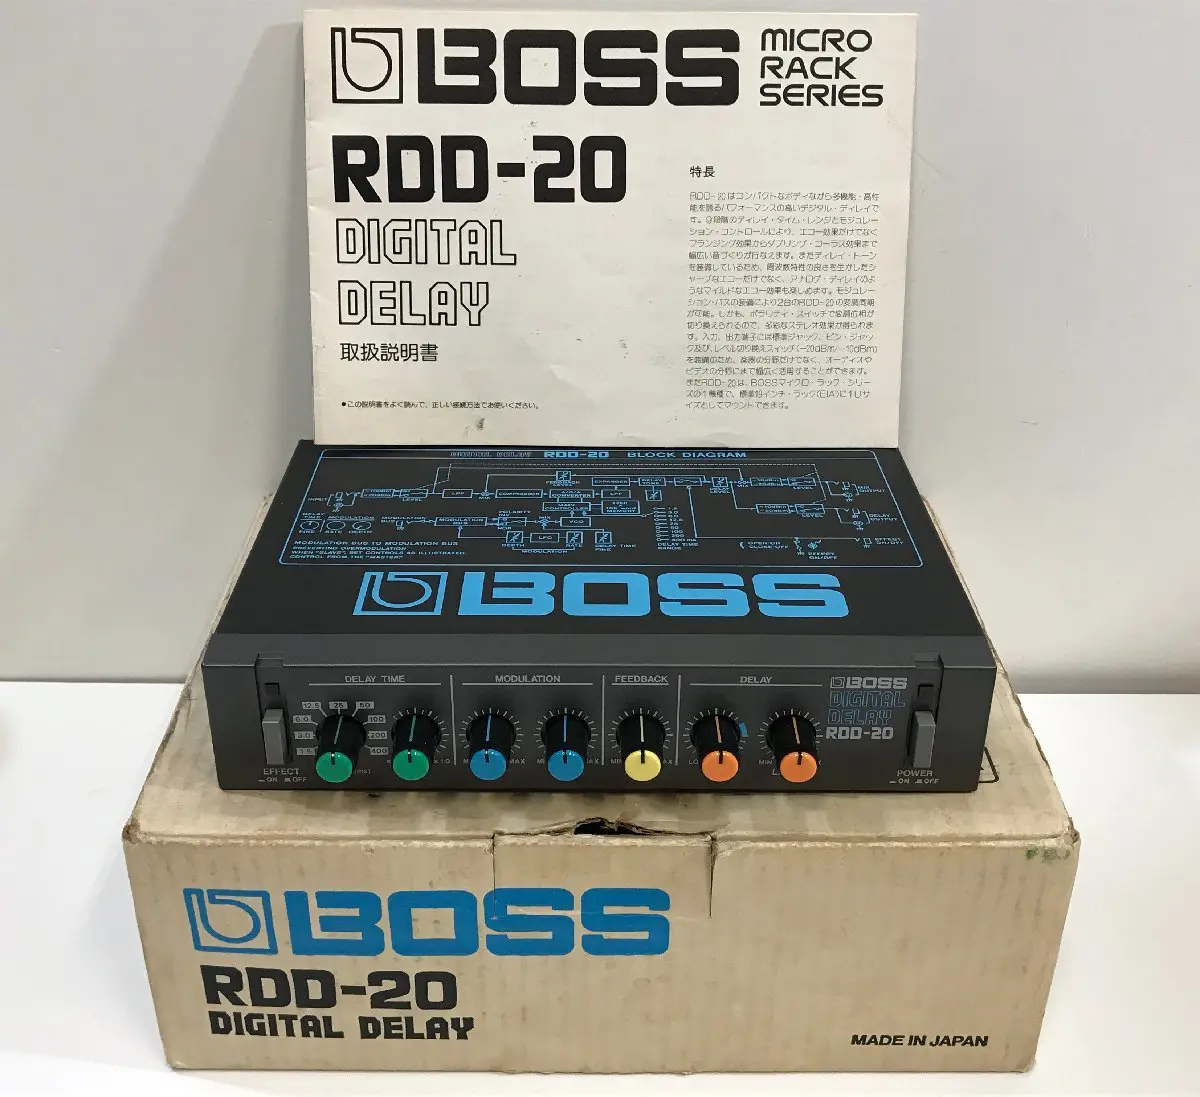 BOSS RDD-20 DIGITAL DELAY デジタルディレイ